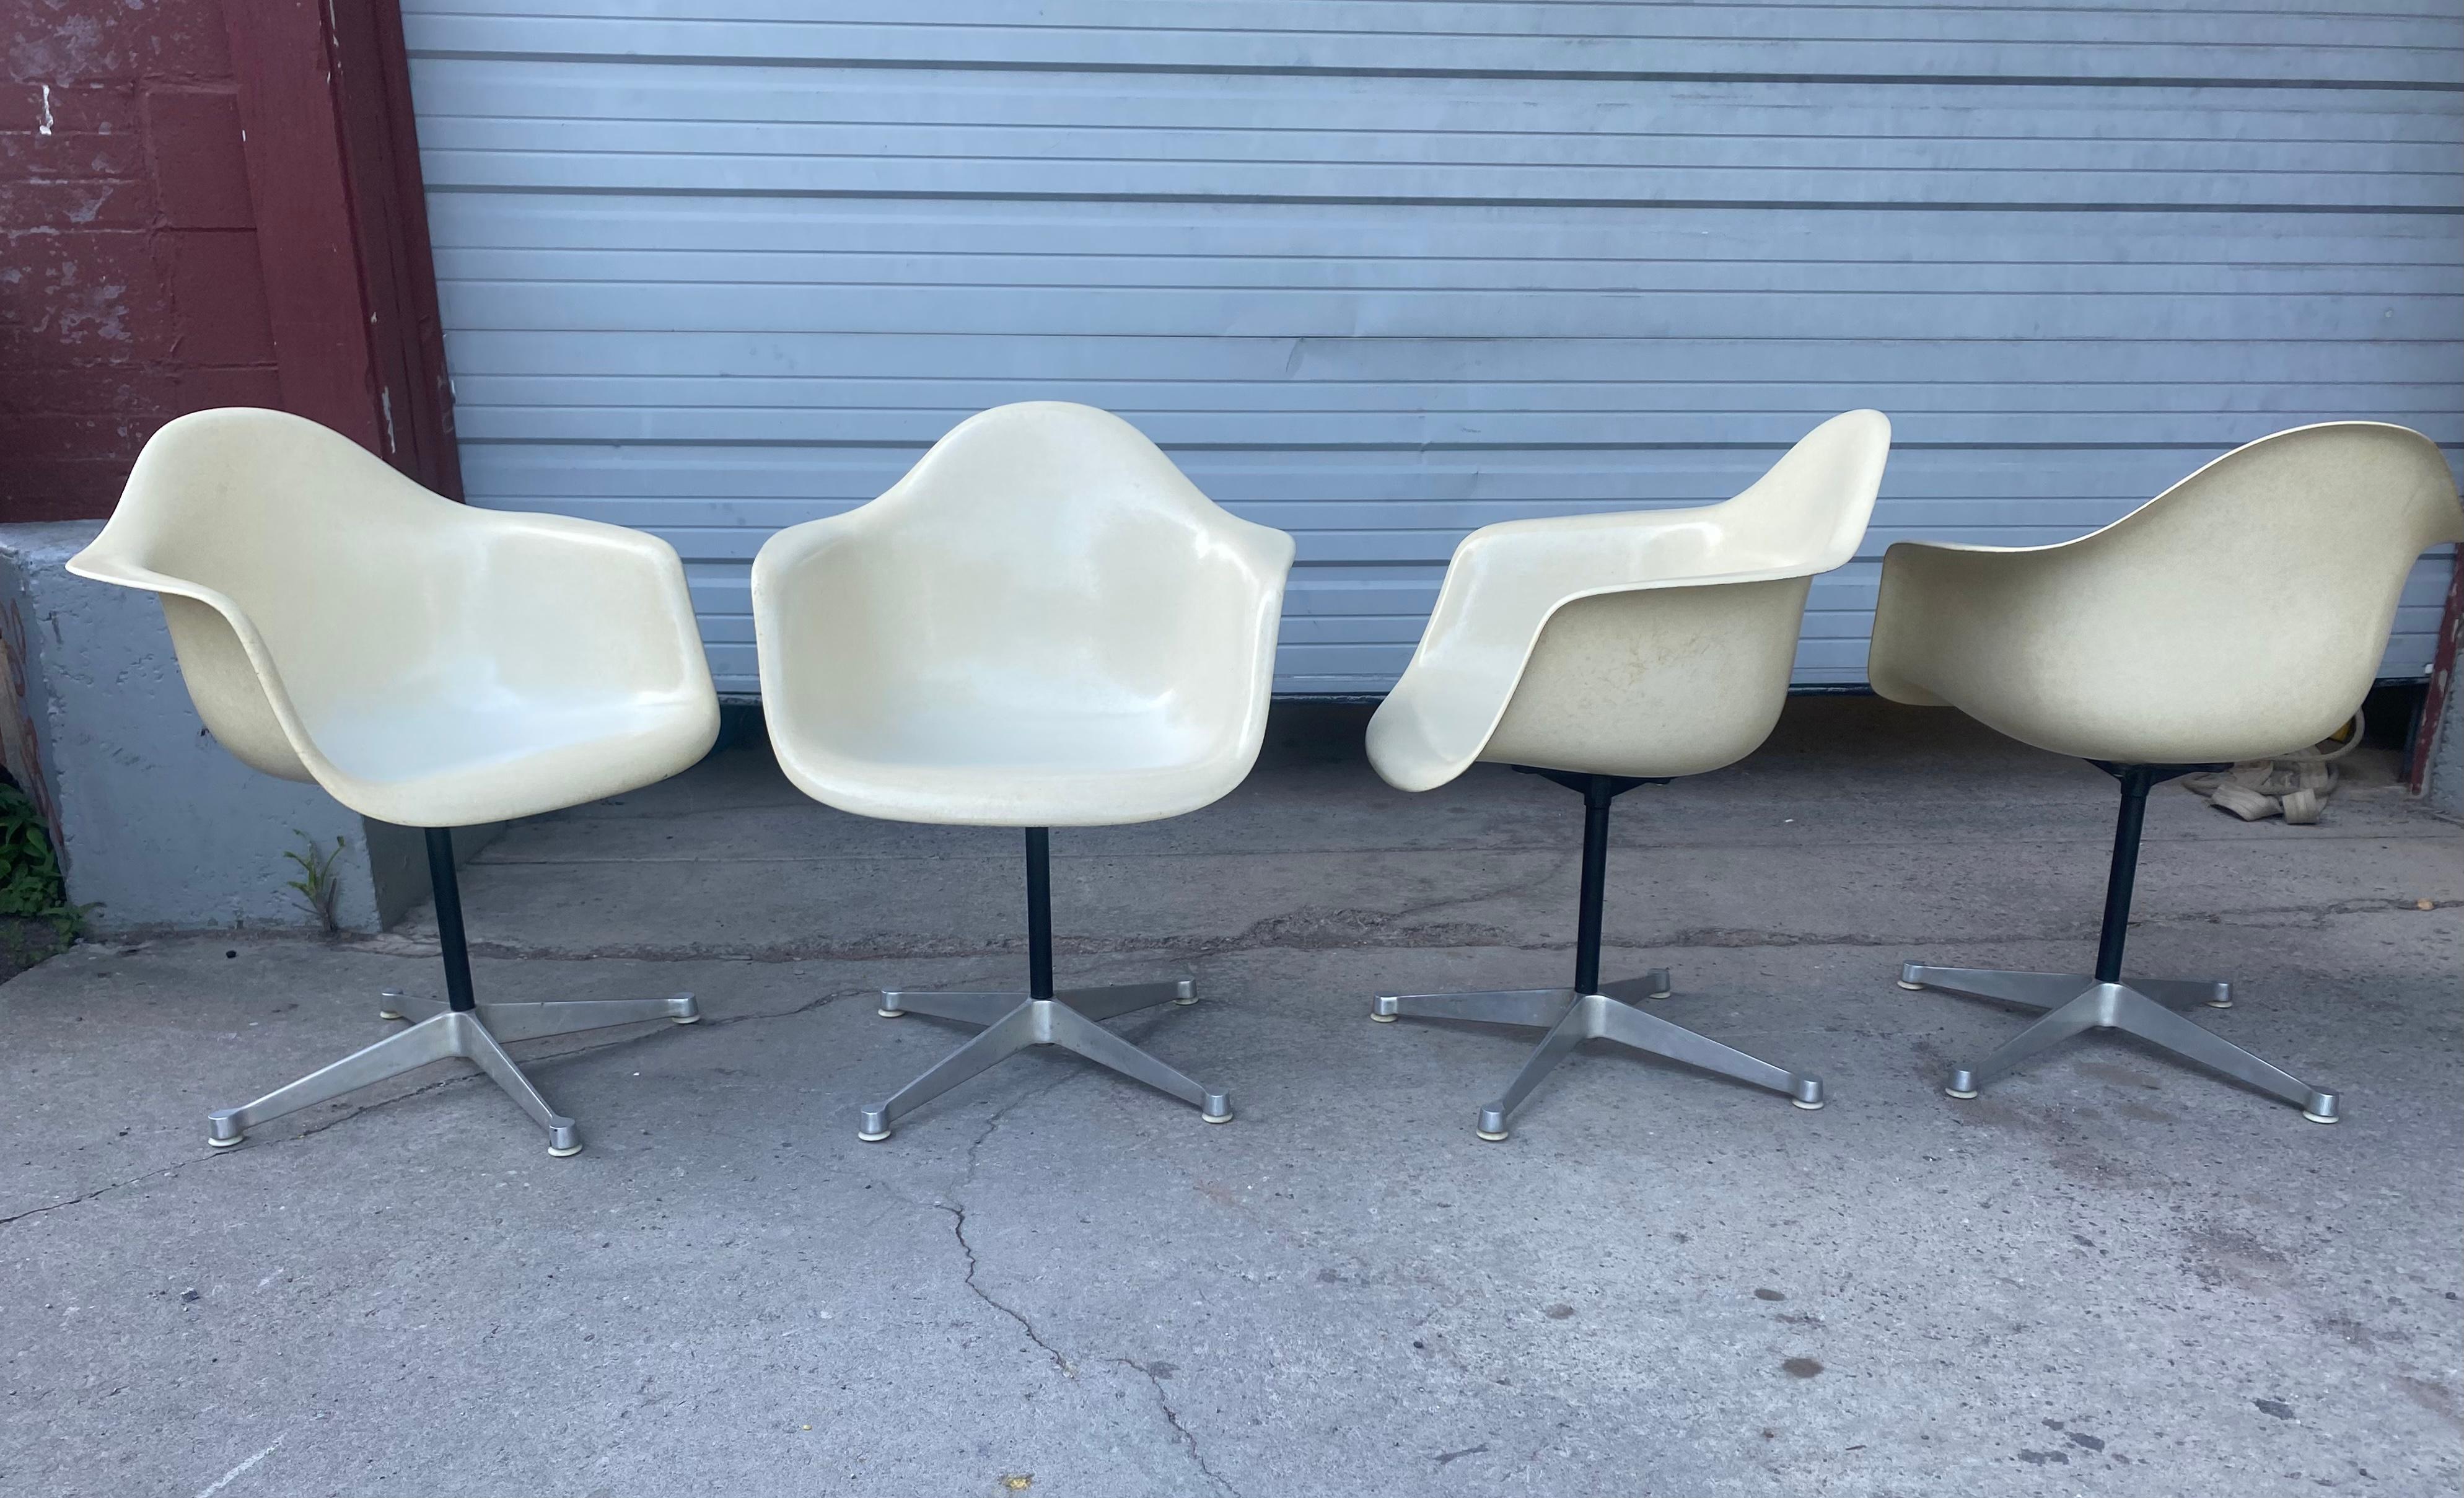 Aluminum Charles Eames for Herman Miller Fiberglass Swivel Dining Chairs / modern white